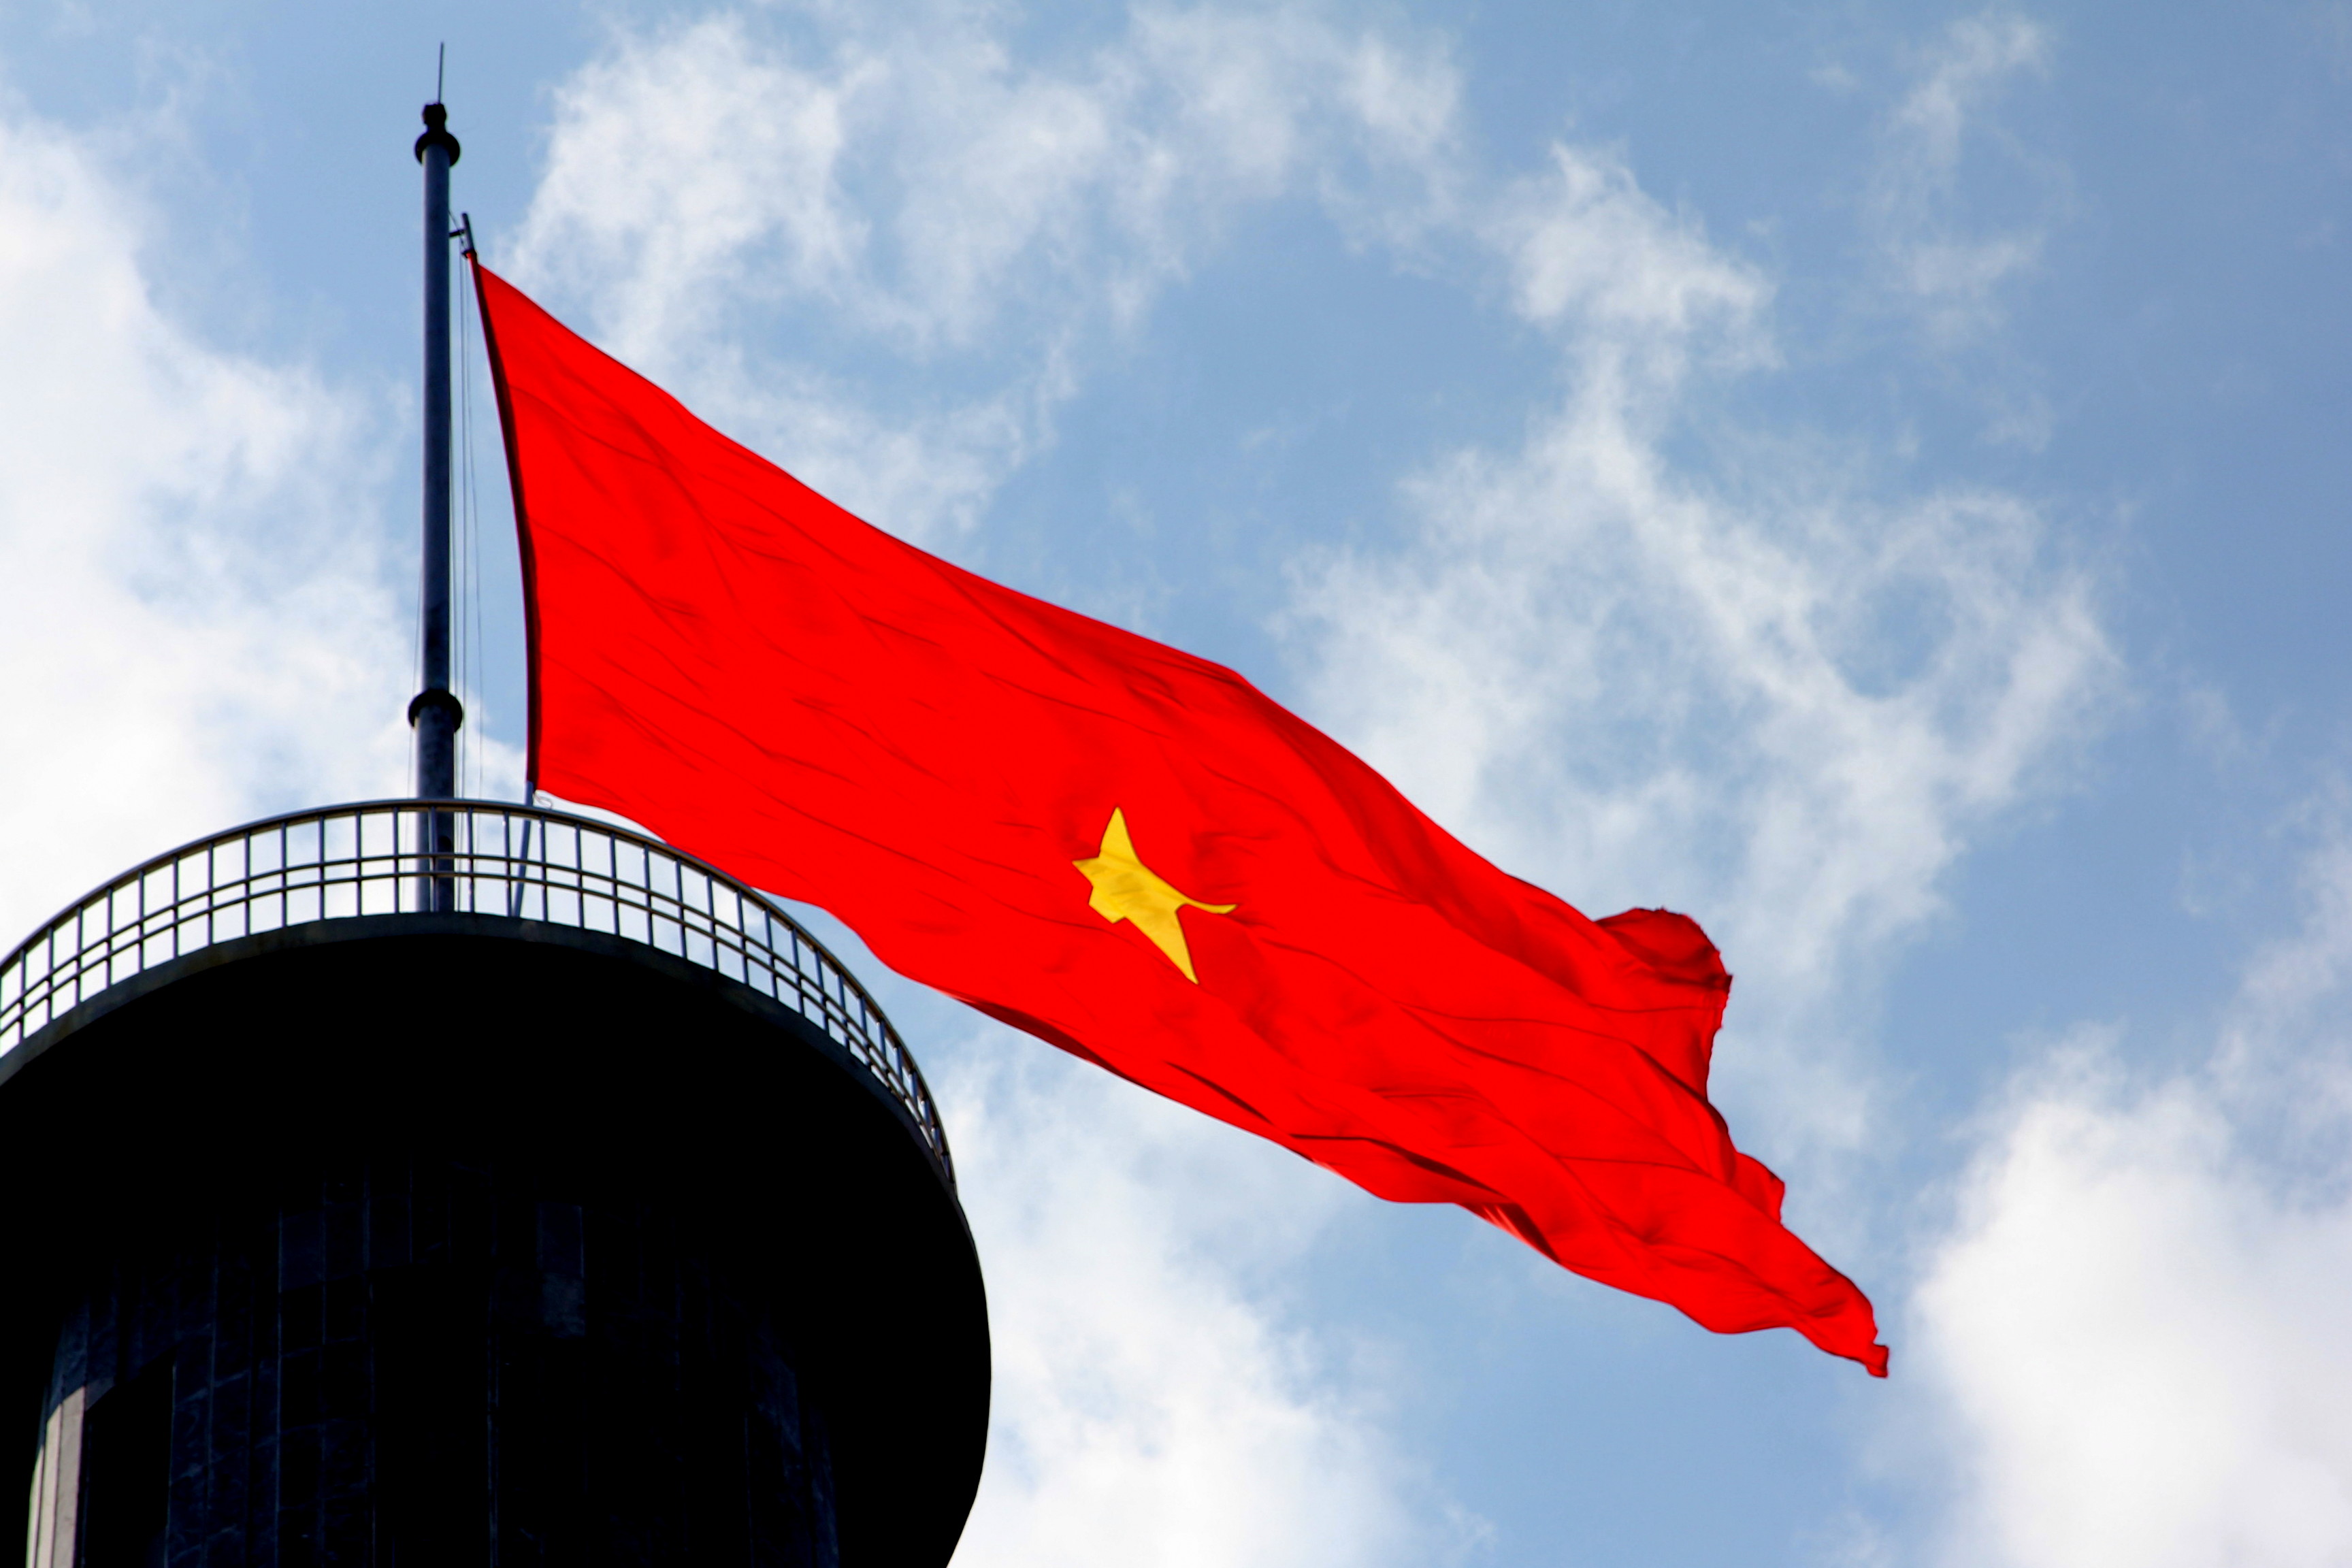 Lá cờ Việt Nam: Tự hào là dân Việt Nam, chúng ta không thể bỏ qua một biểu tượng quan trọng như lá cờ. Hãy đắm chìm trong khoảnh khắc tràn đầy cảm xúc và cảm nhận tình yêu quê hương khi chiêm ngưỡng những hình ảnh tuyệt đẹp về lá cờ Việt Nam.